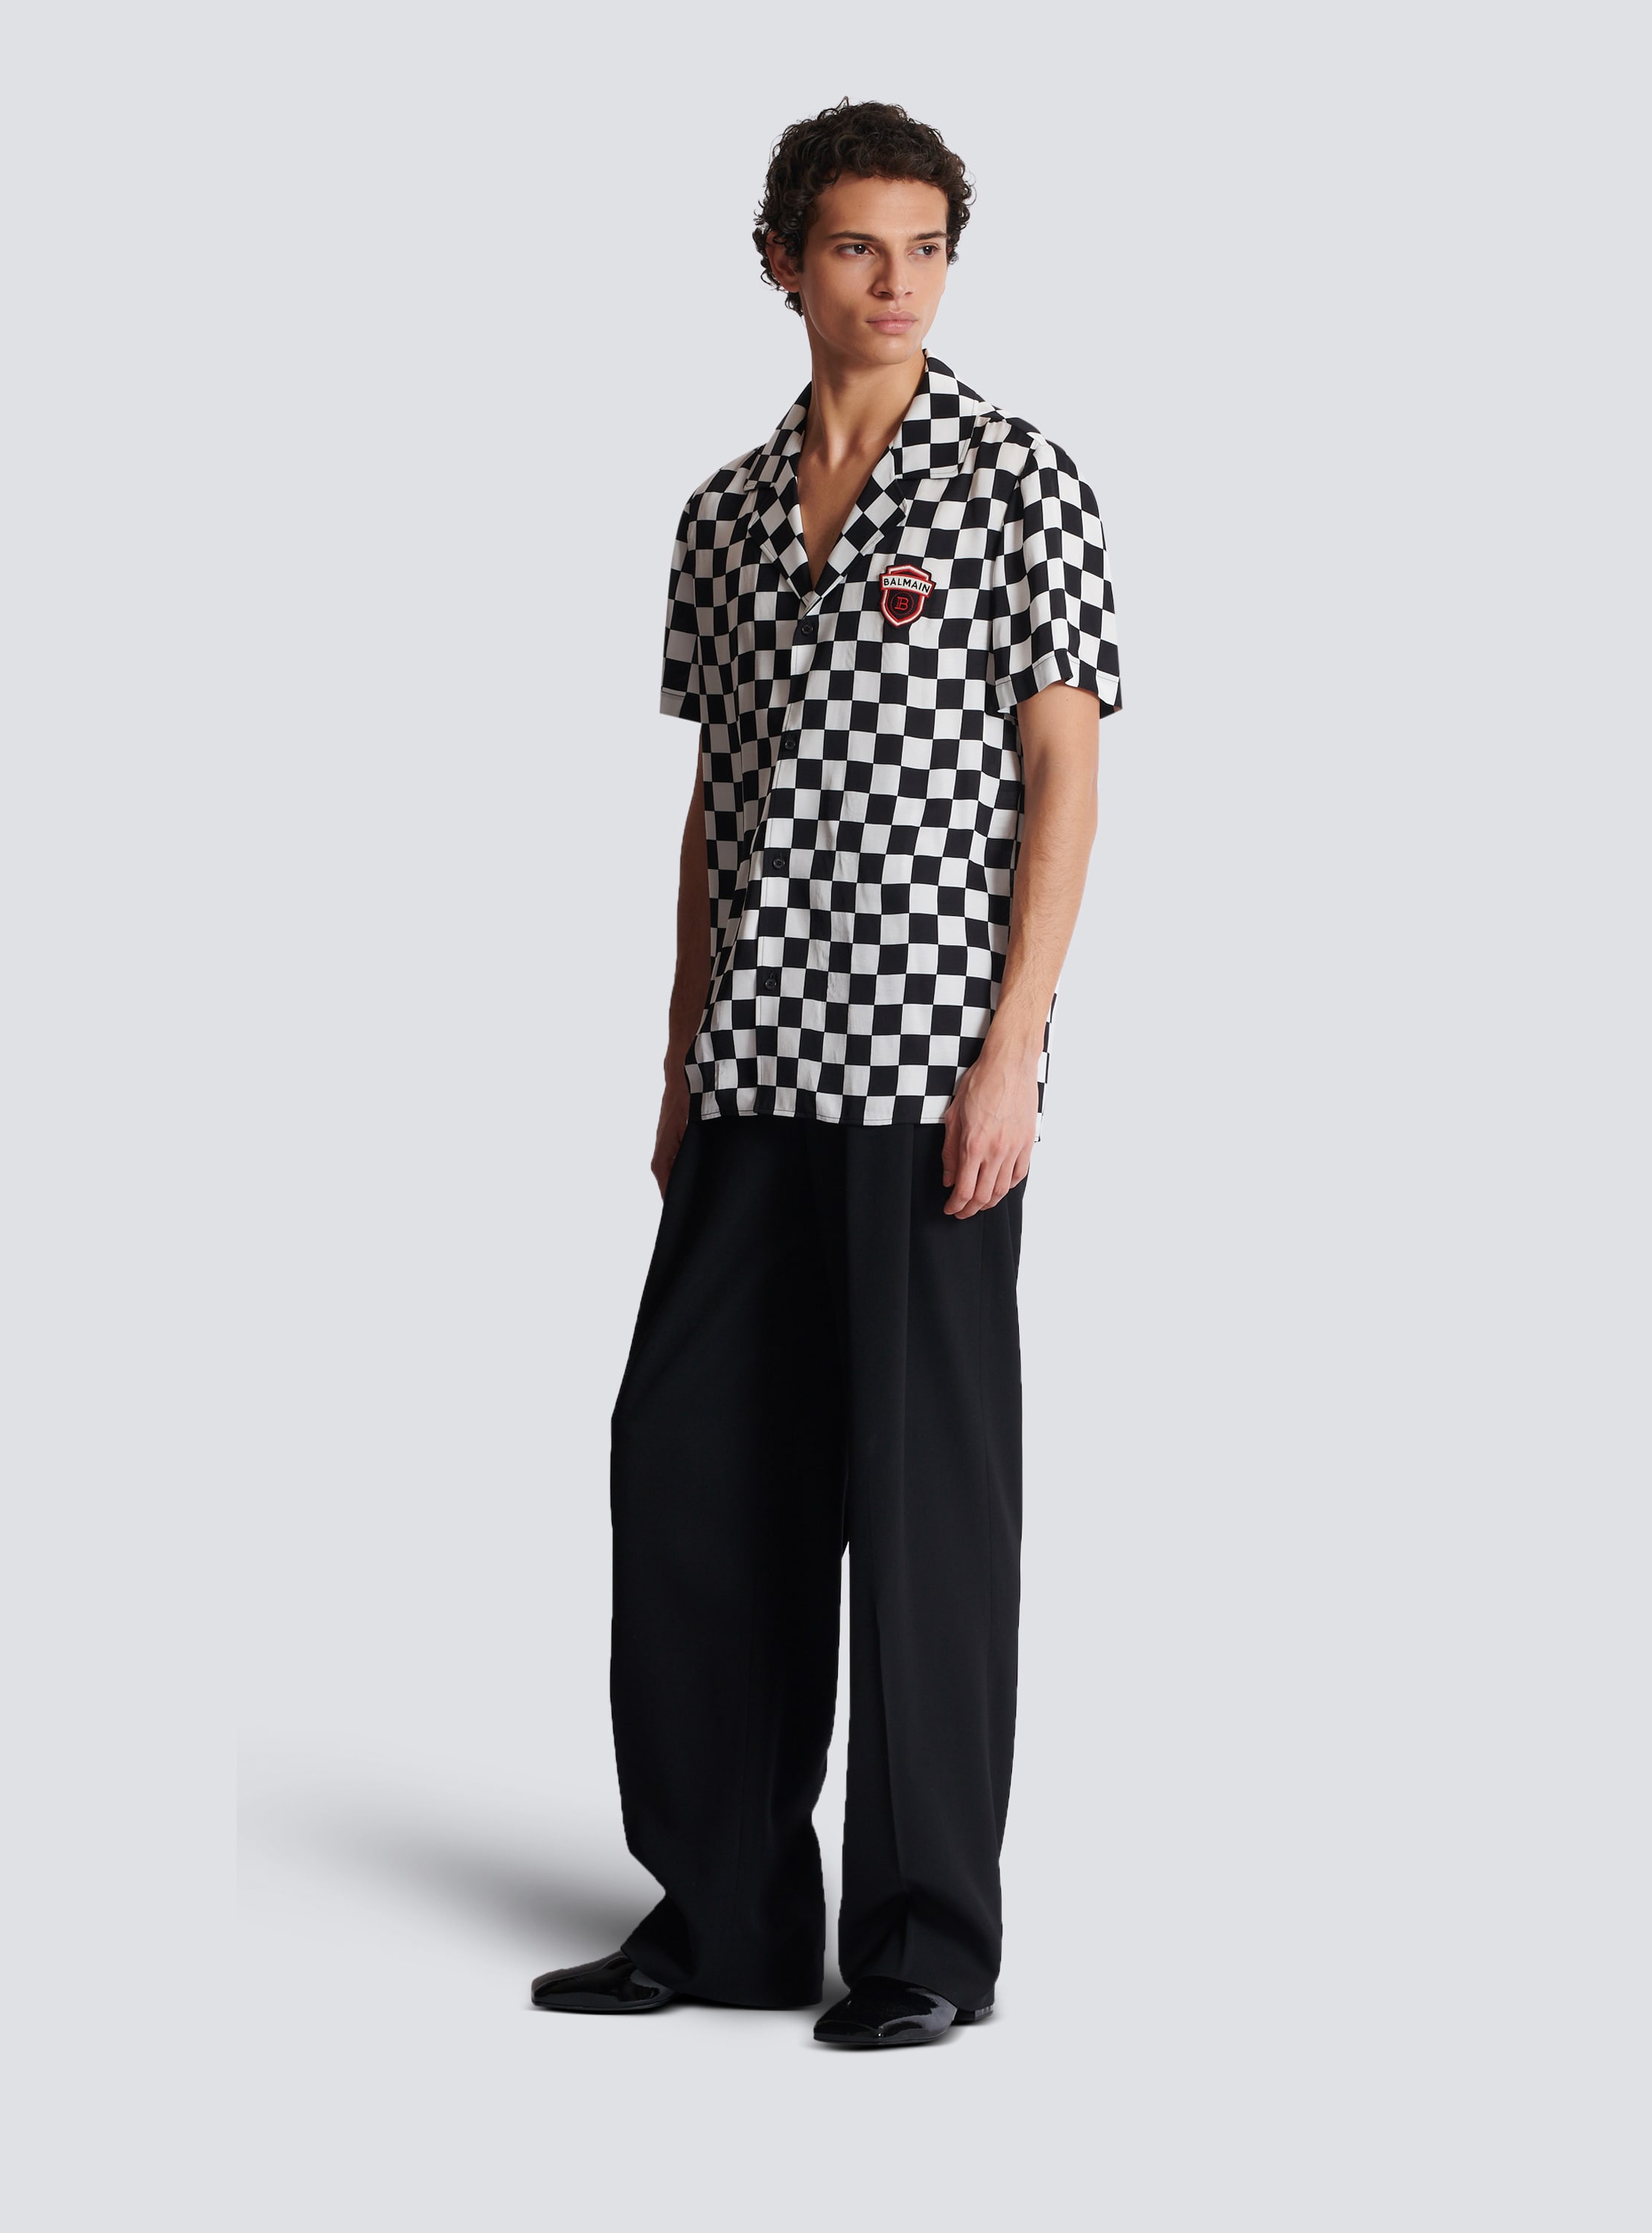 Satin Balmain Racing pyjama shirt